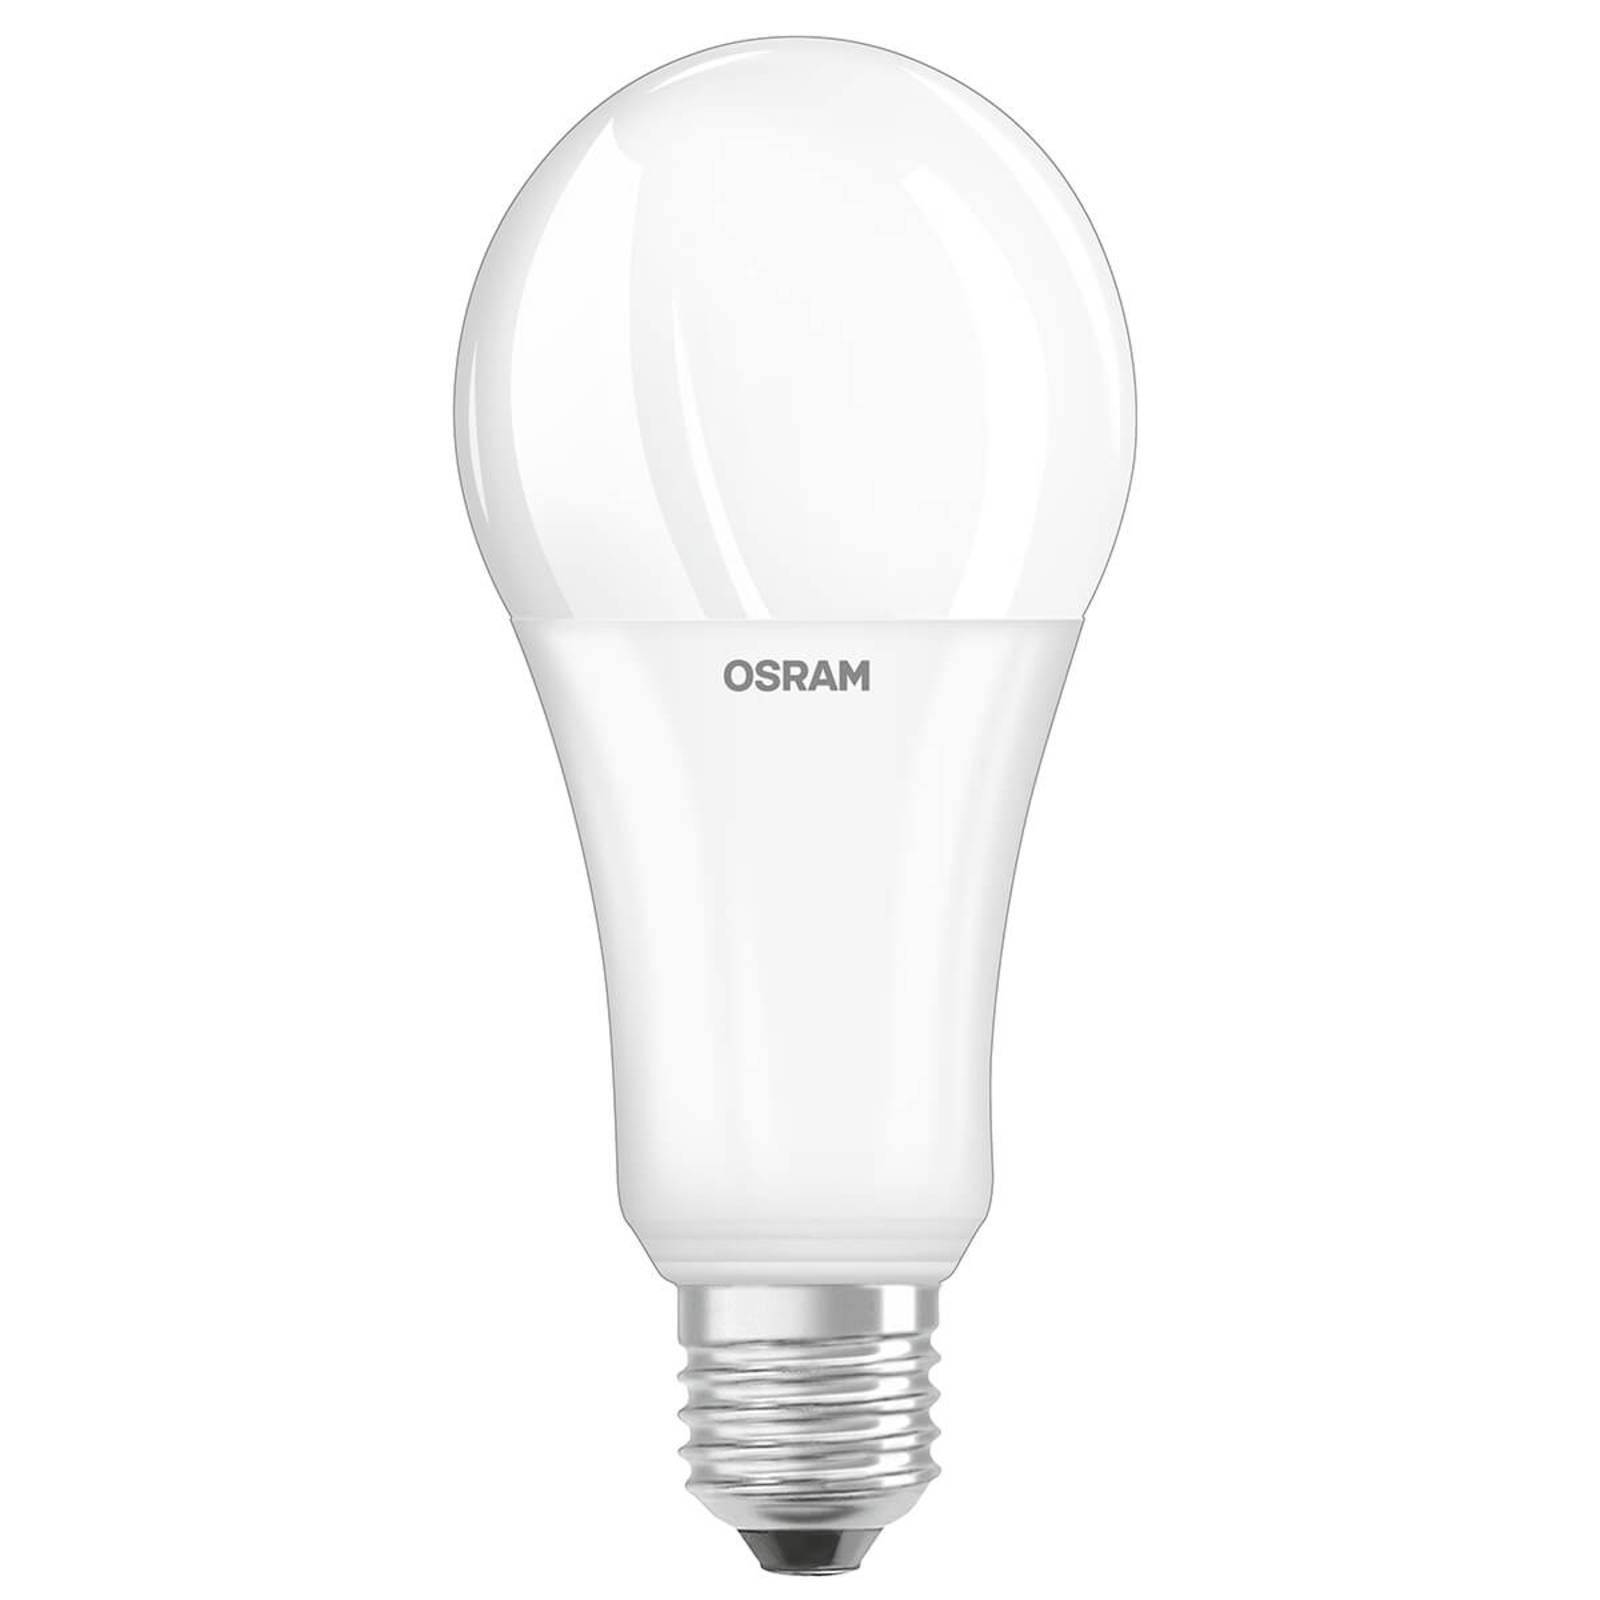 OSRAM OLED žárovka E27 20W, 2 700 K, opál, stmívací